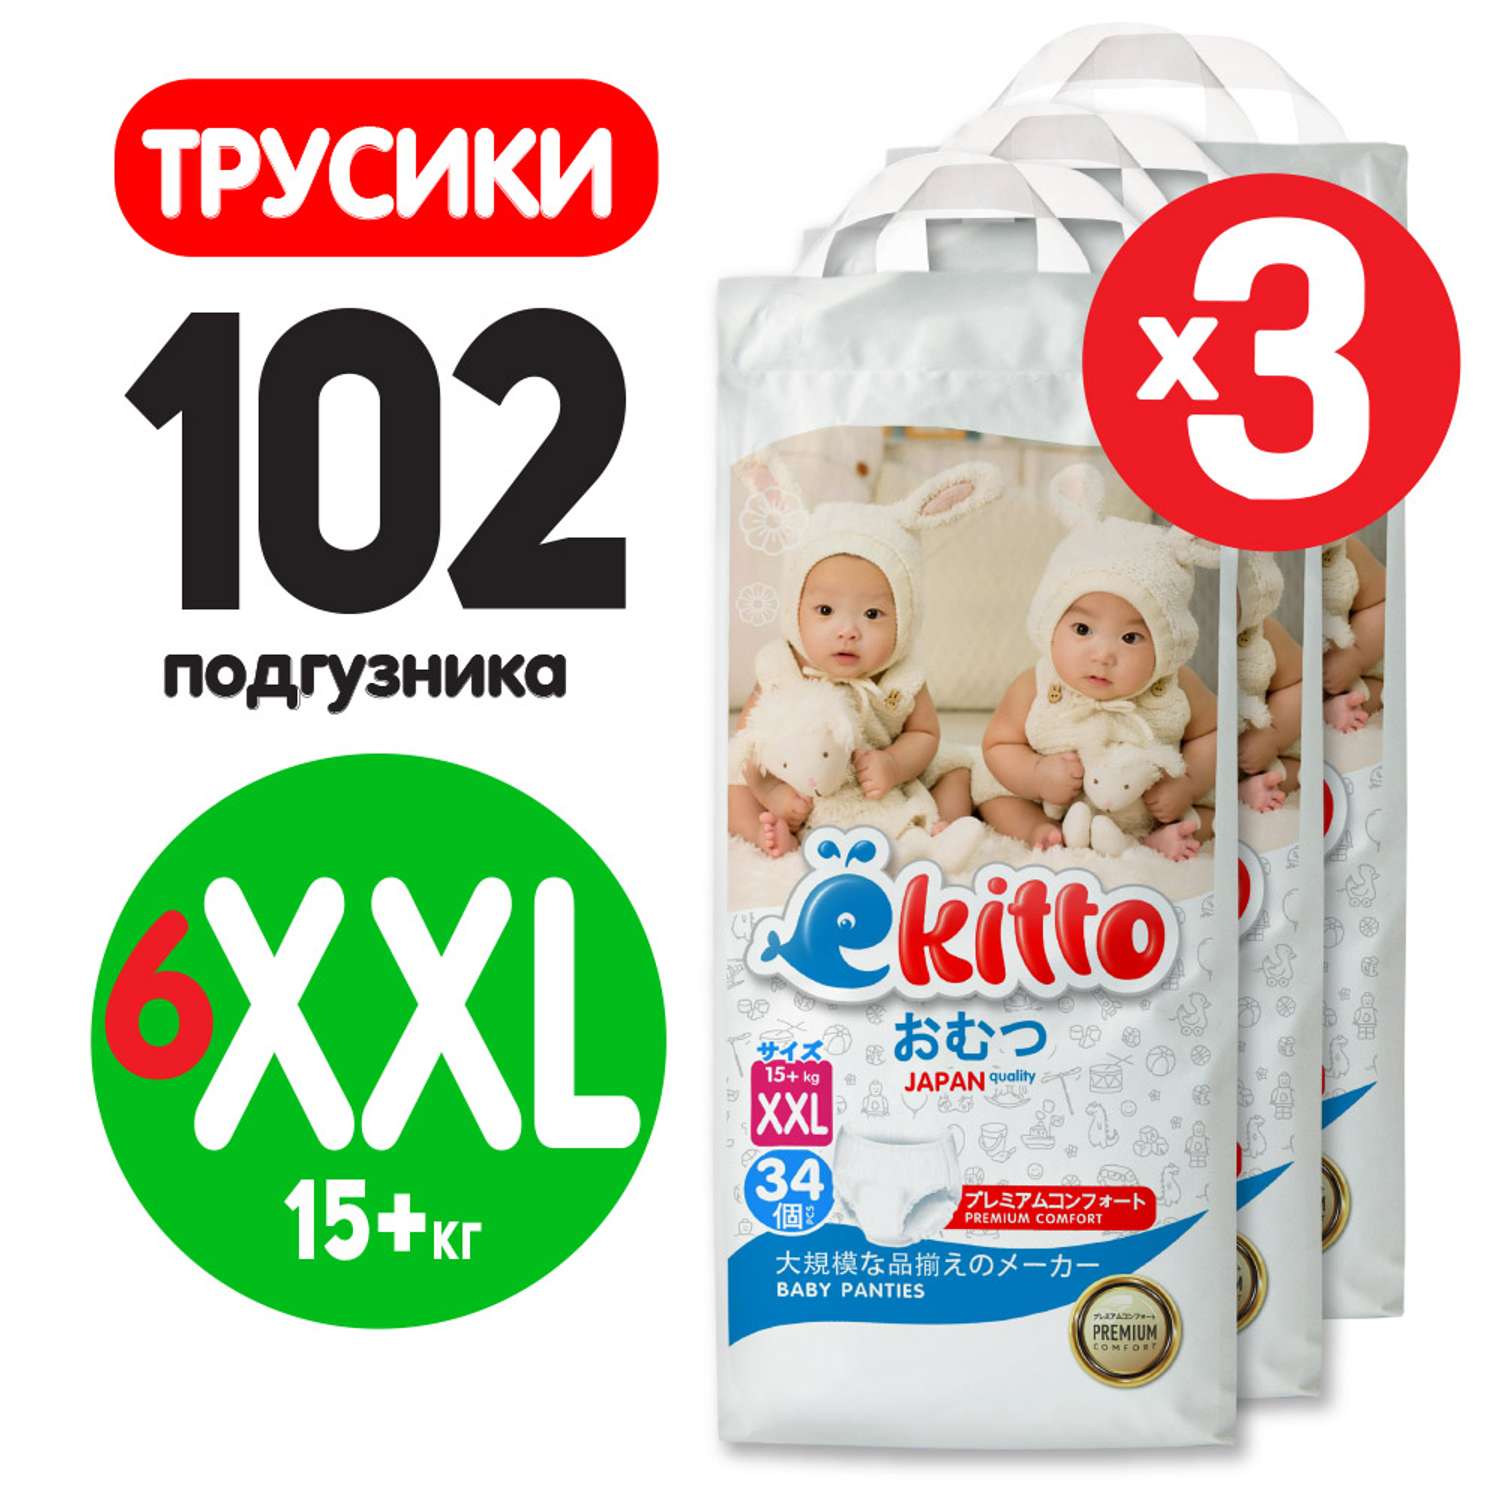 Подгузники-трусики Ekitto 6 размер XXL для детей от 15-20 кг 102 шт премиум японские ночные - фото 9